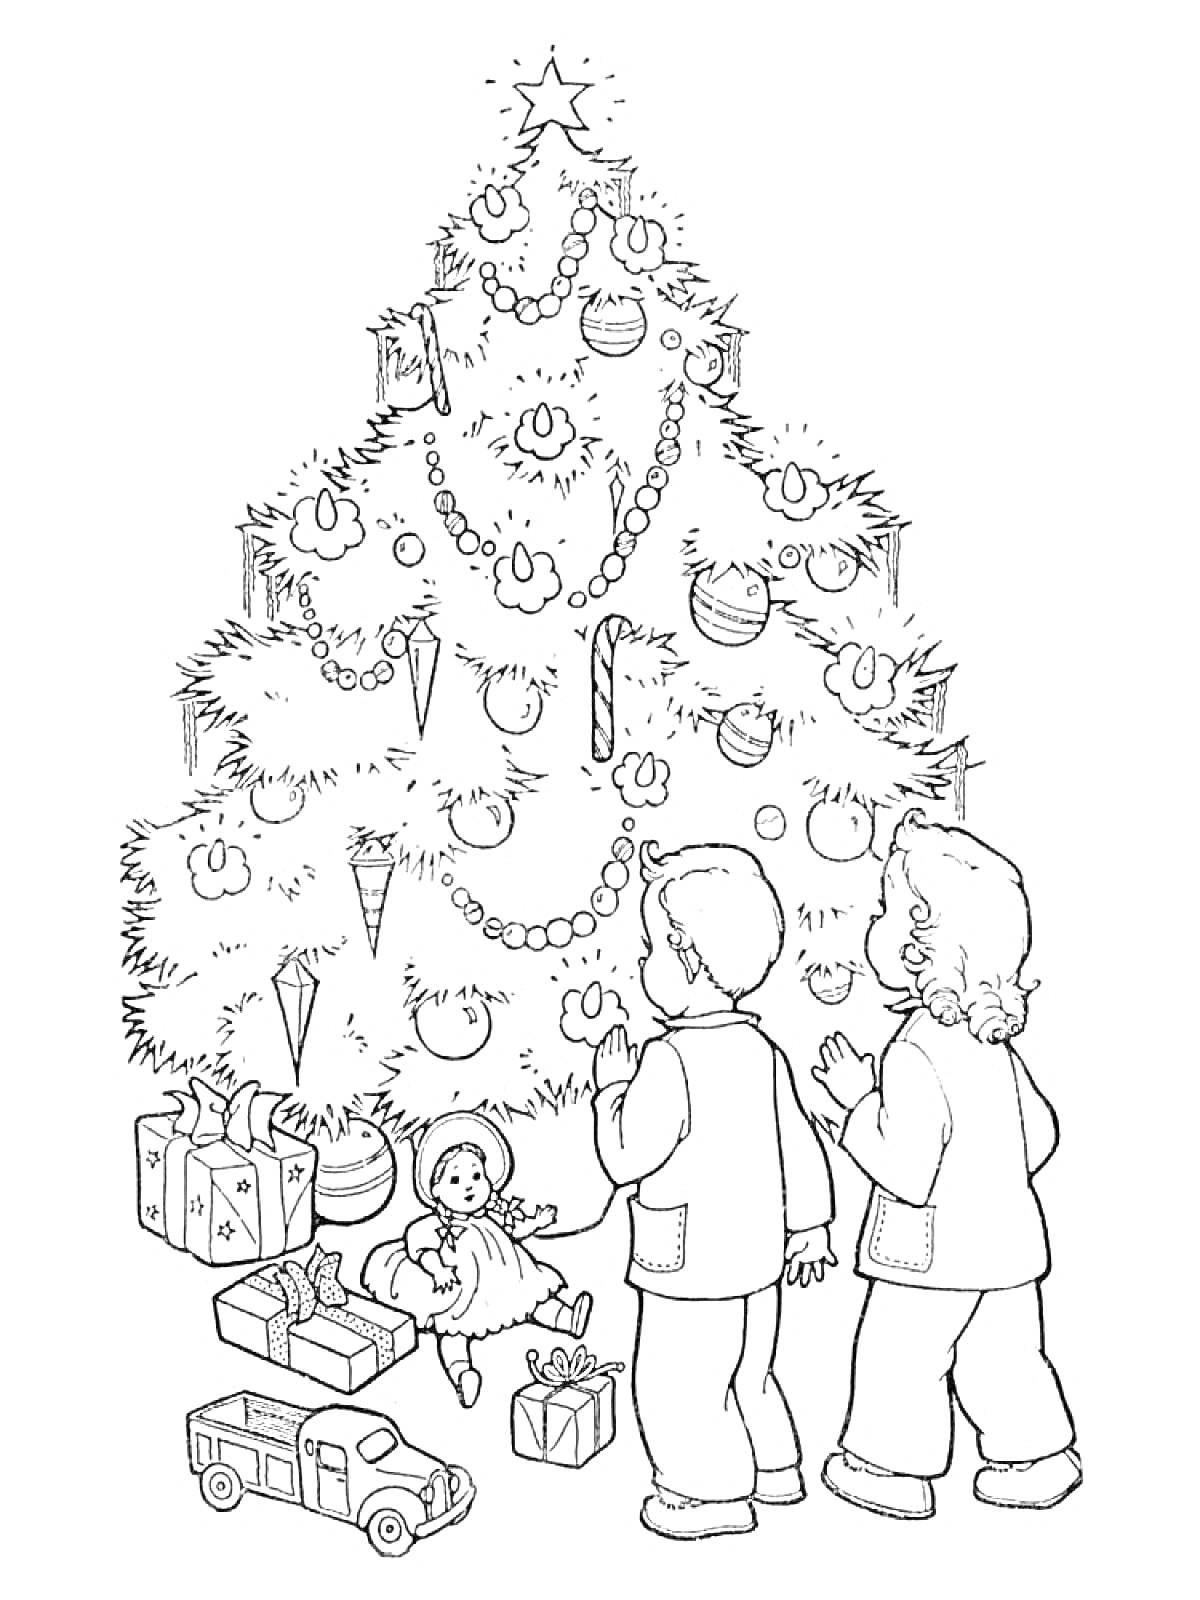 Раскраска Елка с игрушками, гирляндами и подарками, дети смотрят на украшенную елку.